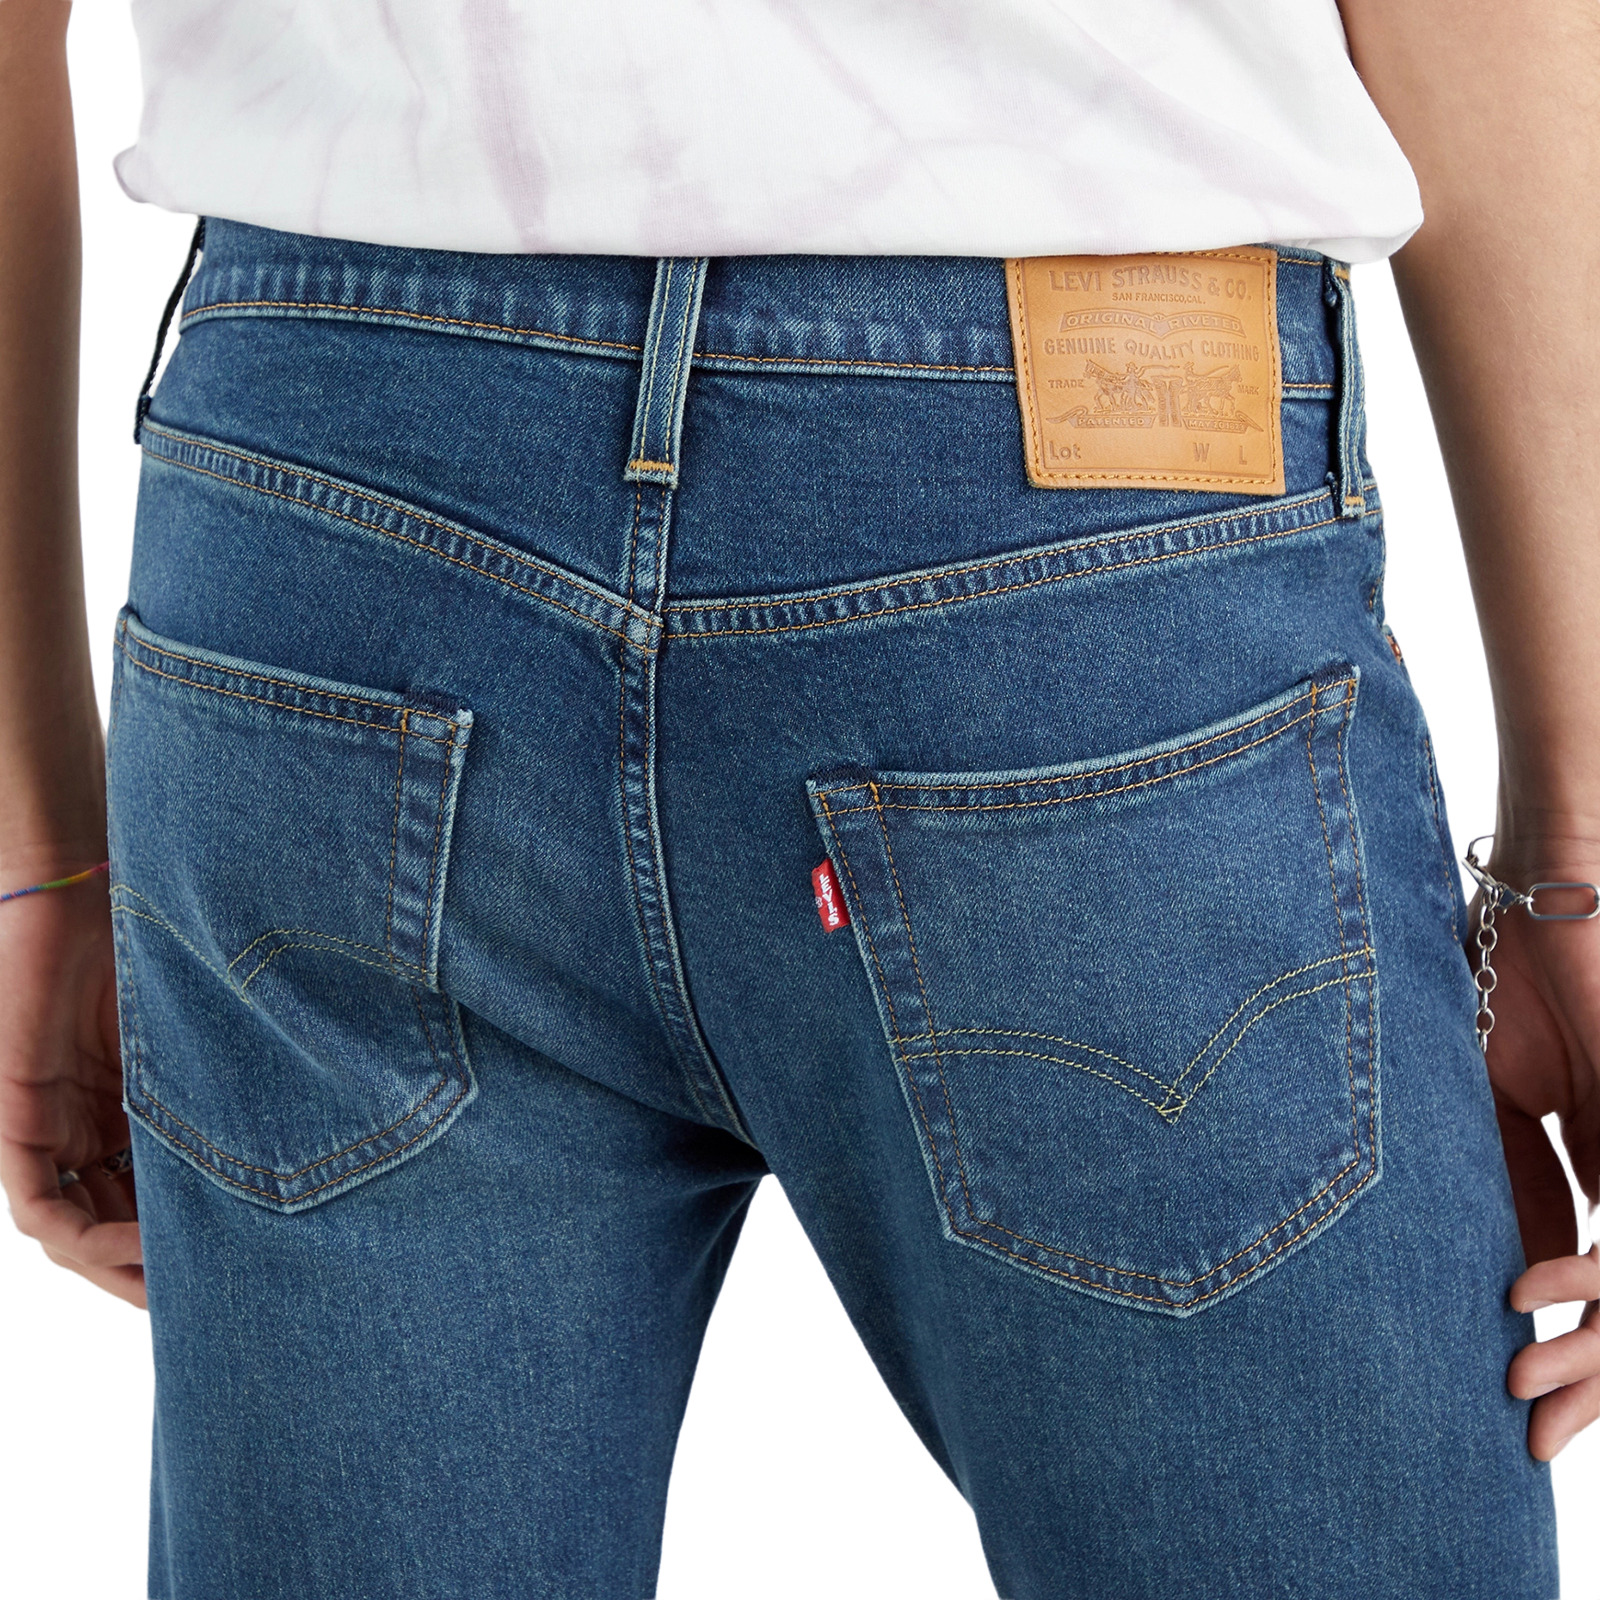 Джинсы Levis Men 512 Slim Taper Fit Jeans (28833-0936) купить за 16 900  руб. в интернет-магазине JNS